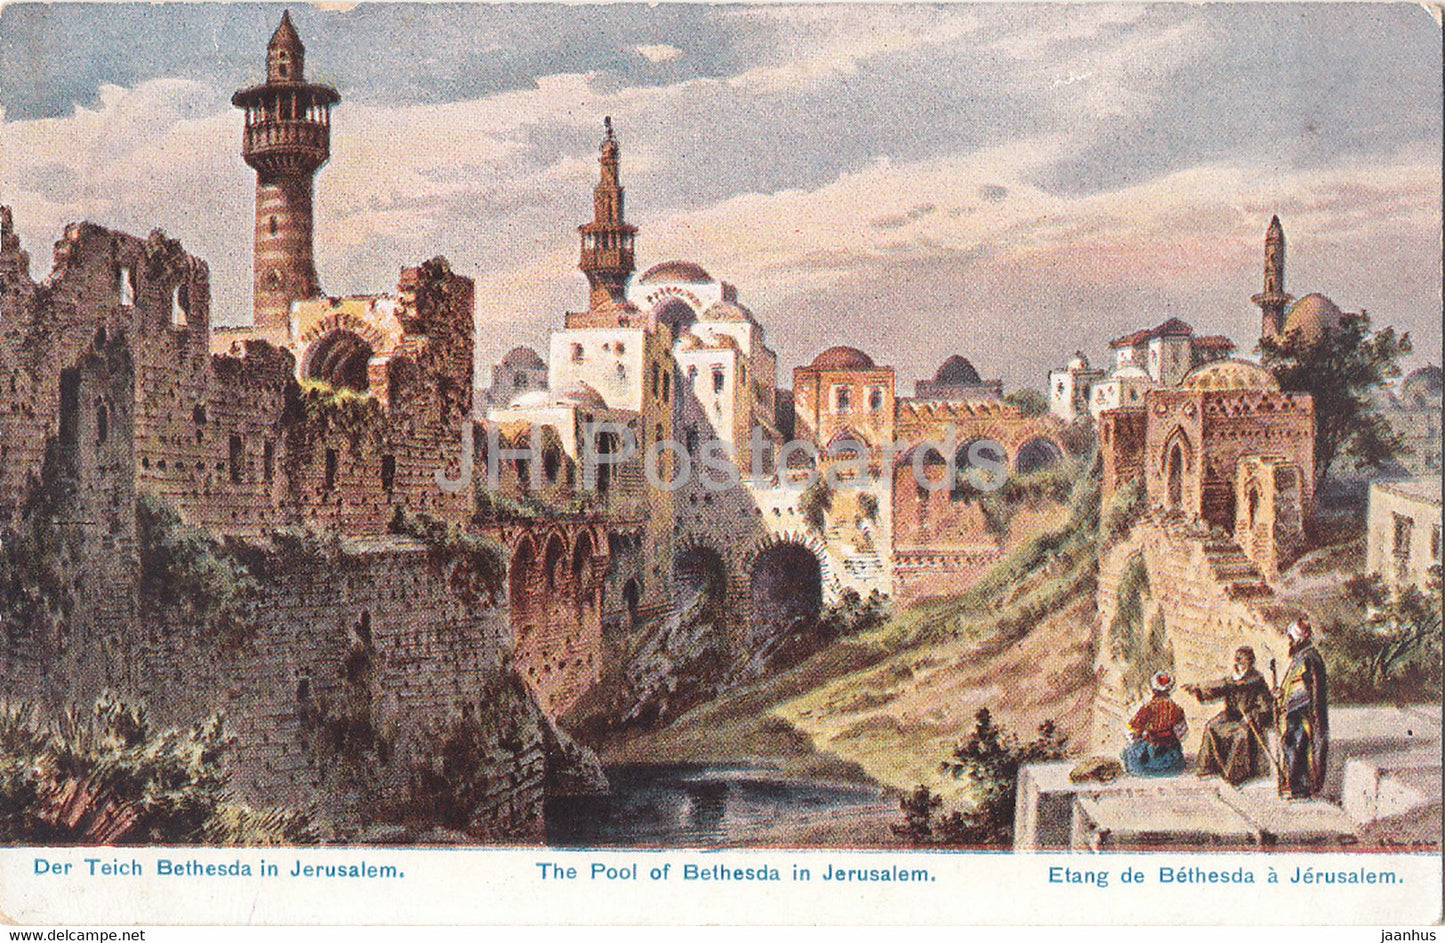 The Pool of Bethesda in Jerusalem - Etang de Bethesda a Jerusalem - 35 - illustration - old postcard - Germany - used - JH Postcards